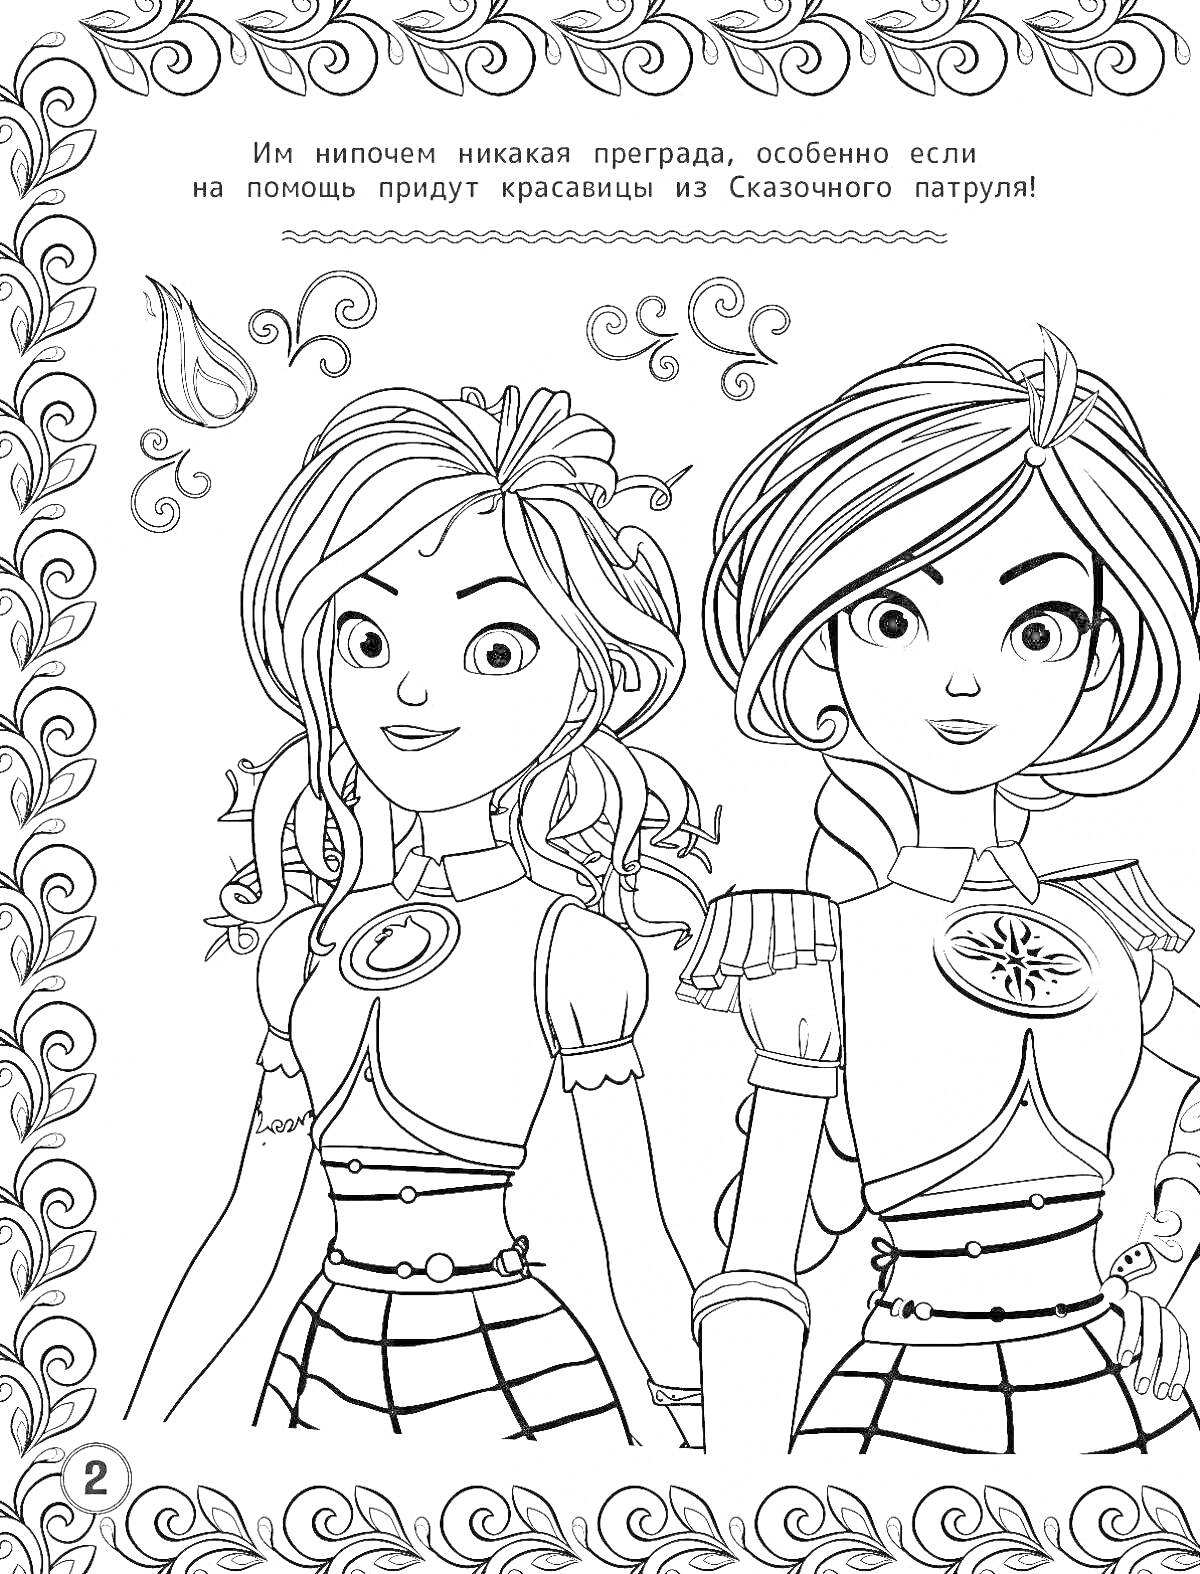 Раскраска Две девушки в форме, украшенные элементы, завитки и текст сверху с рамкой по краям